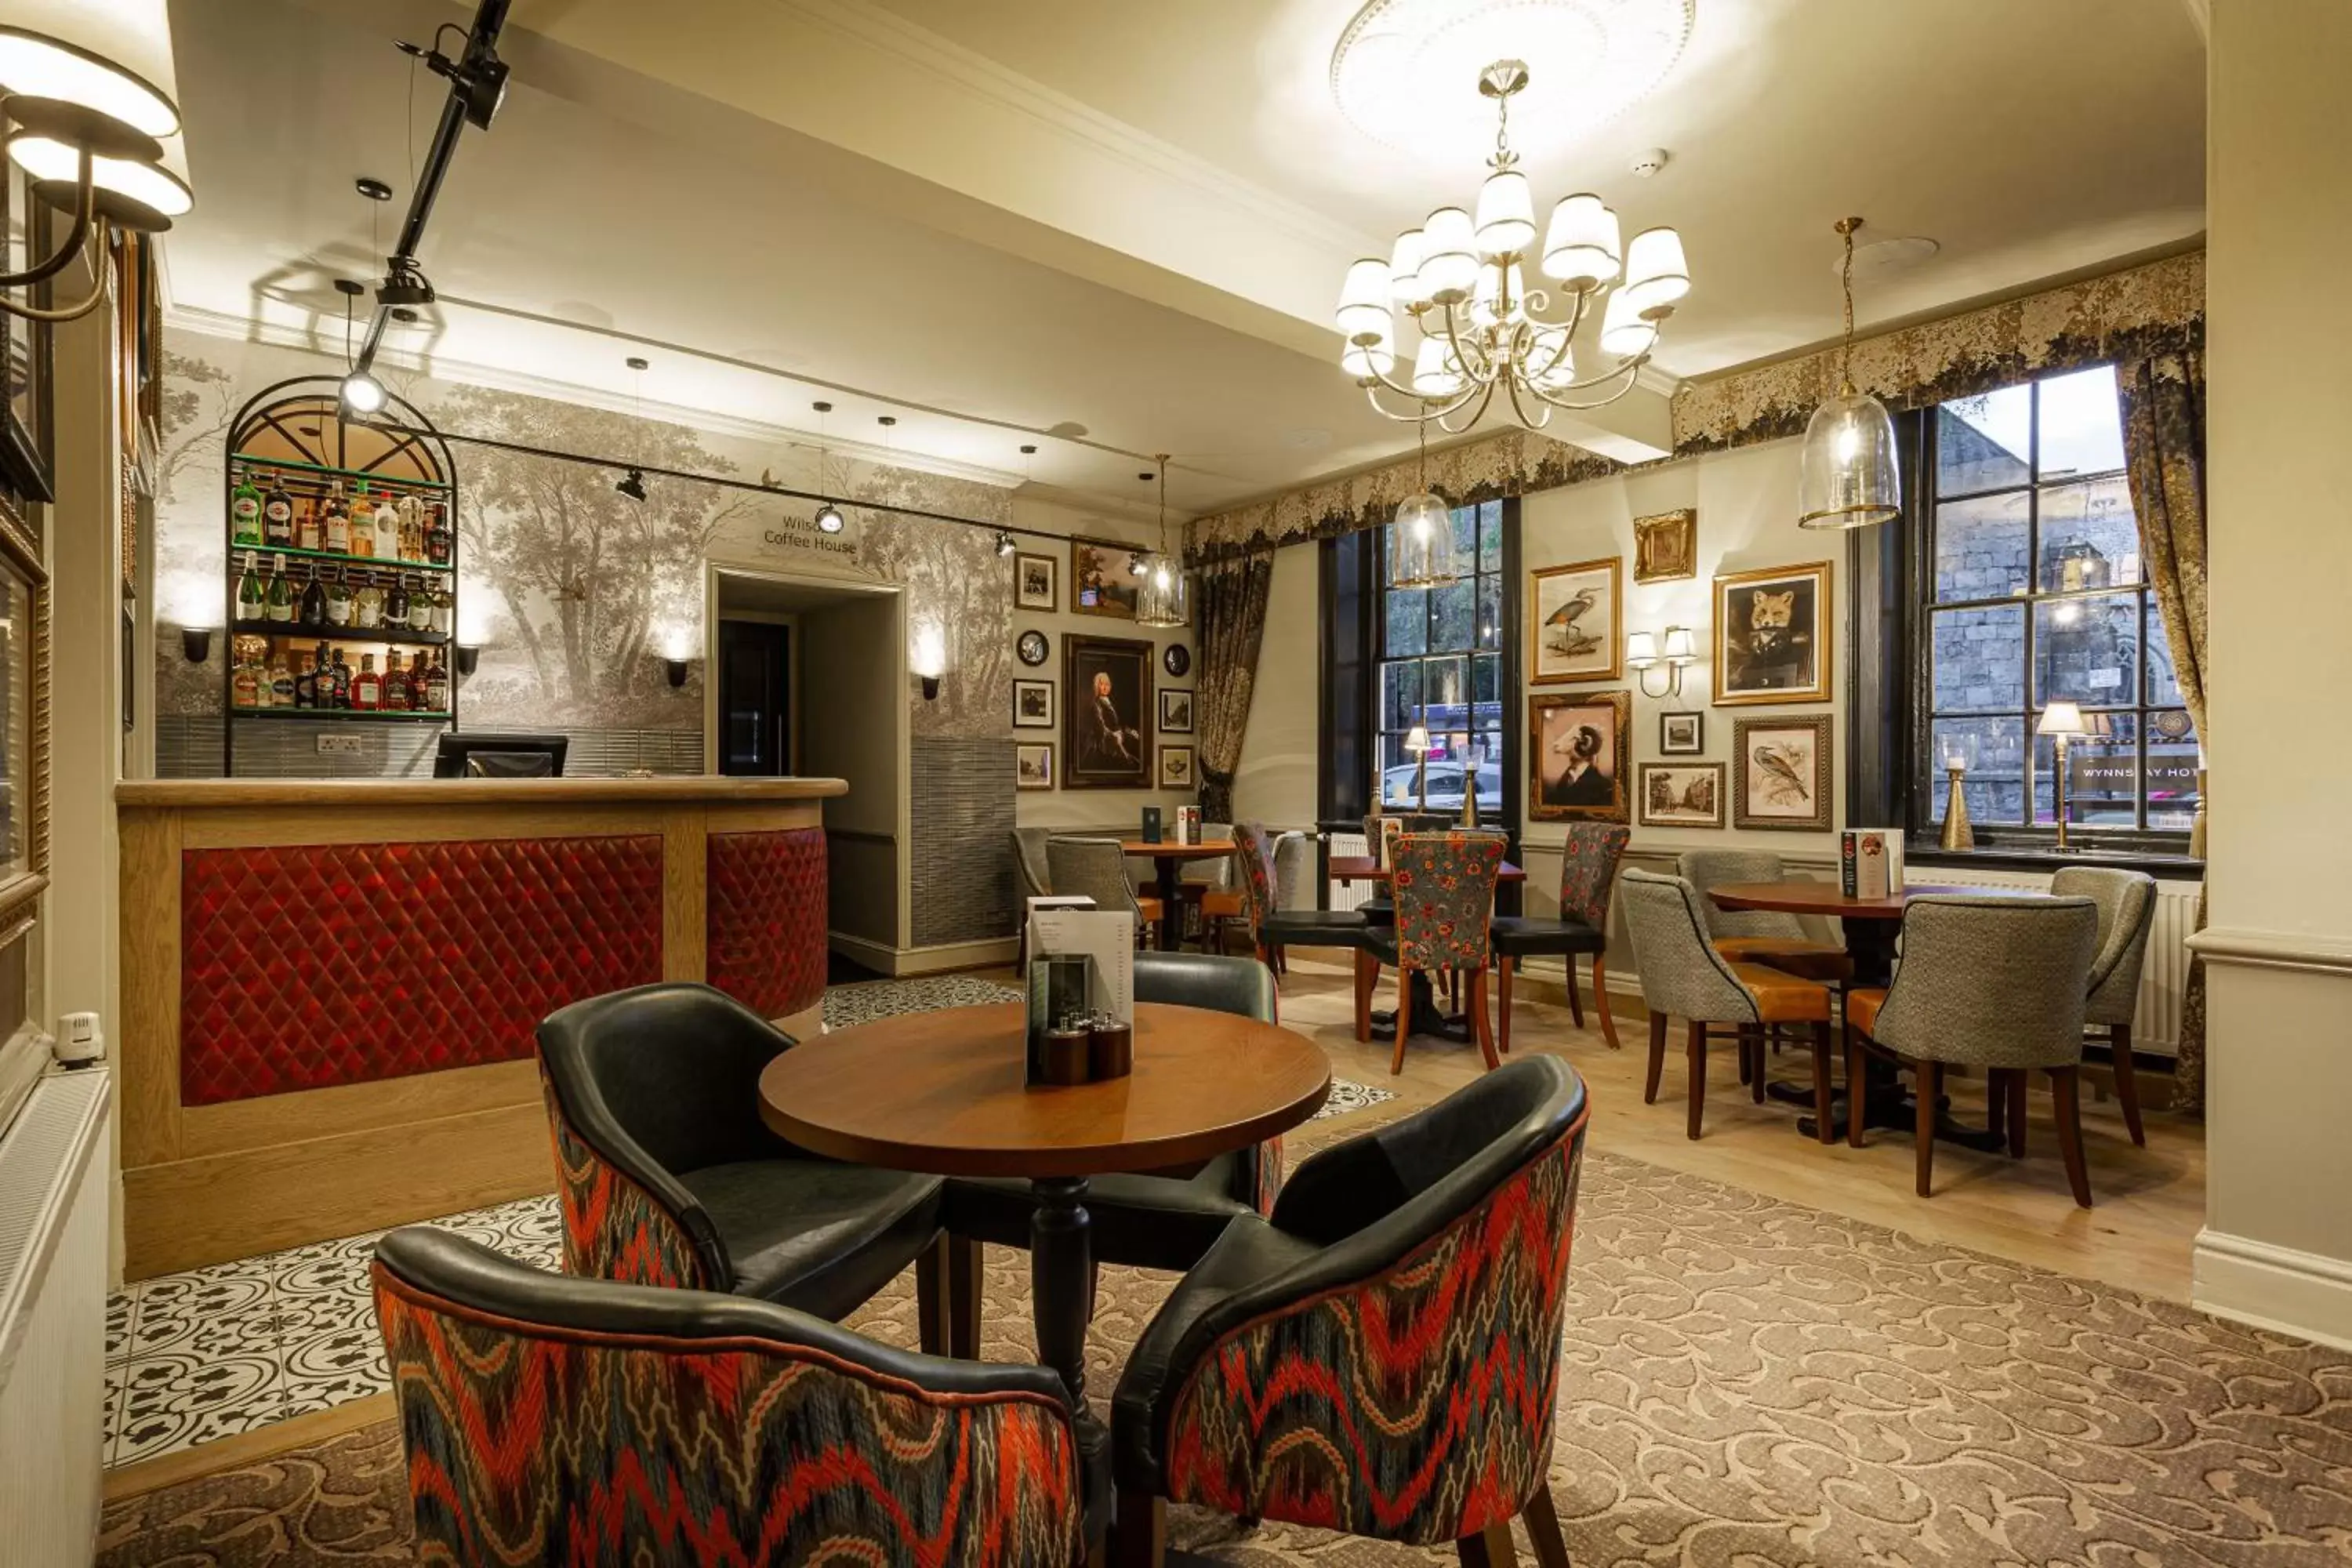 Lounge or bar, Lounge/Bar in The Wynnstay Hotel, Oswestry, Shropshire